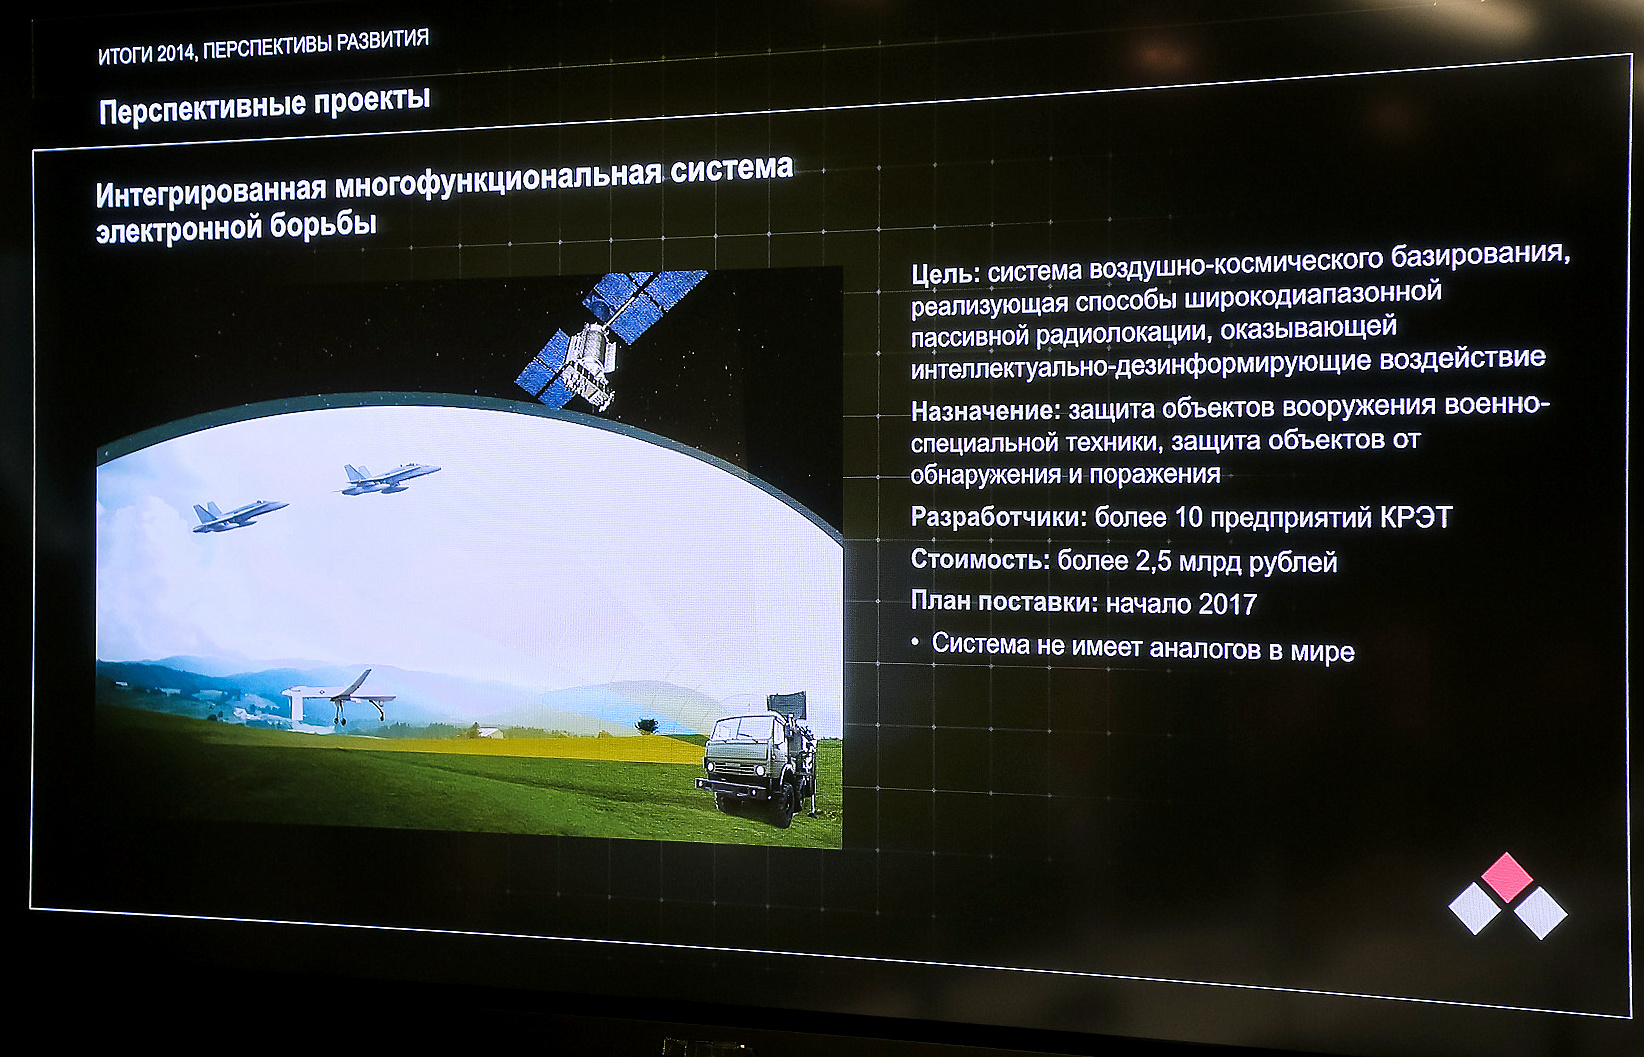 Проект системы РЭБ воздушно-космического базирования. Фото Е. Пряничникова